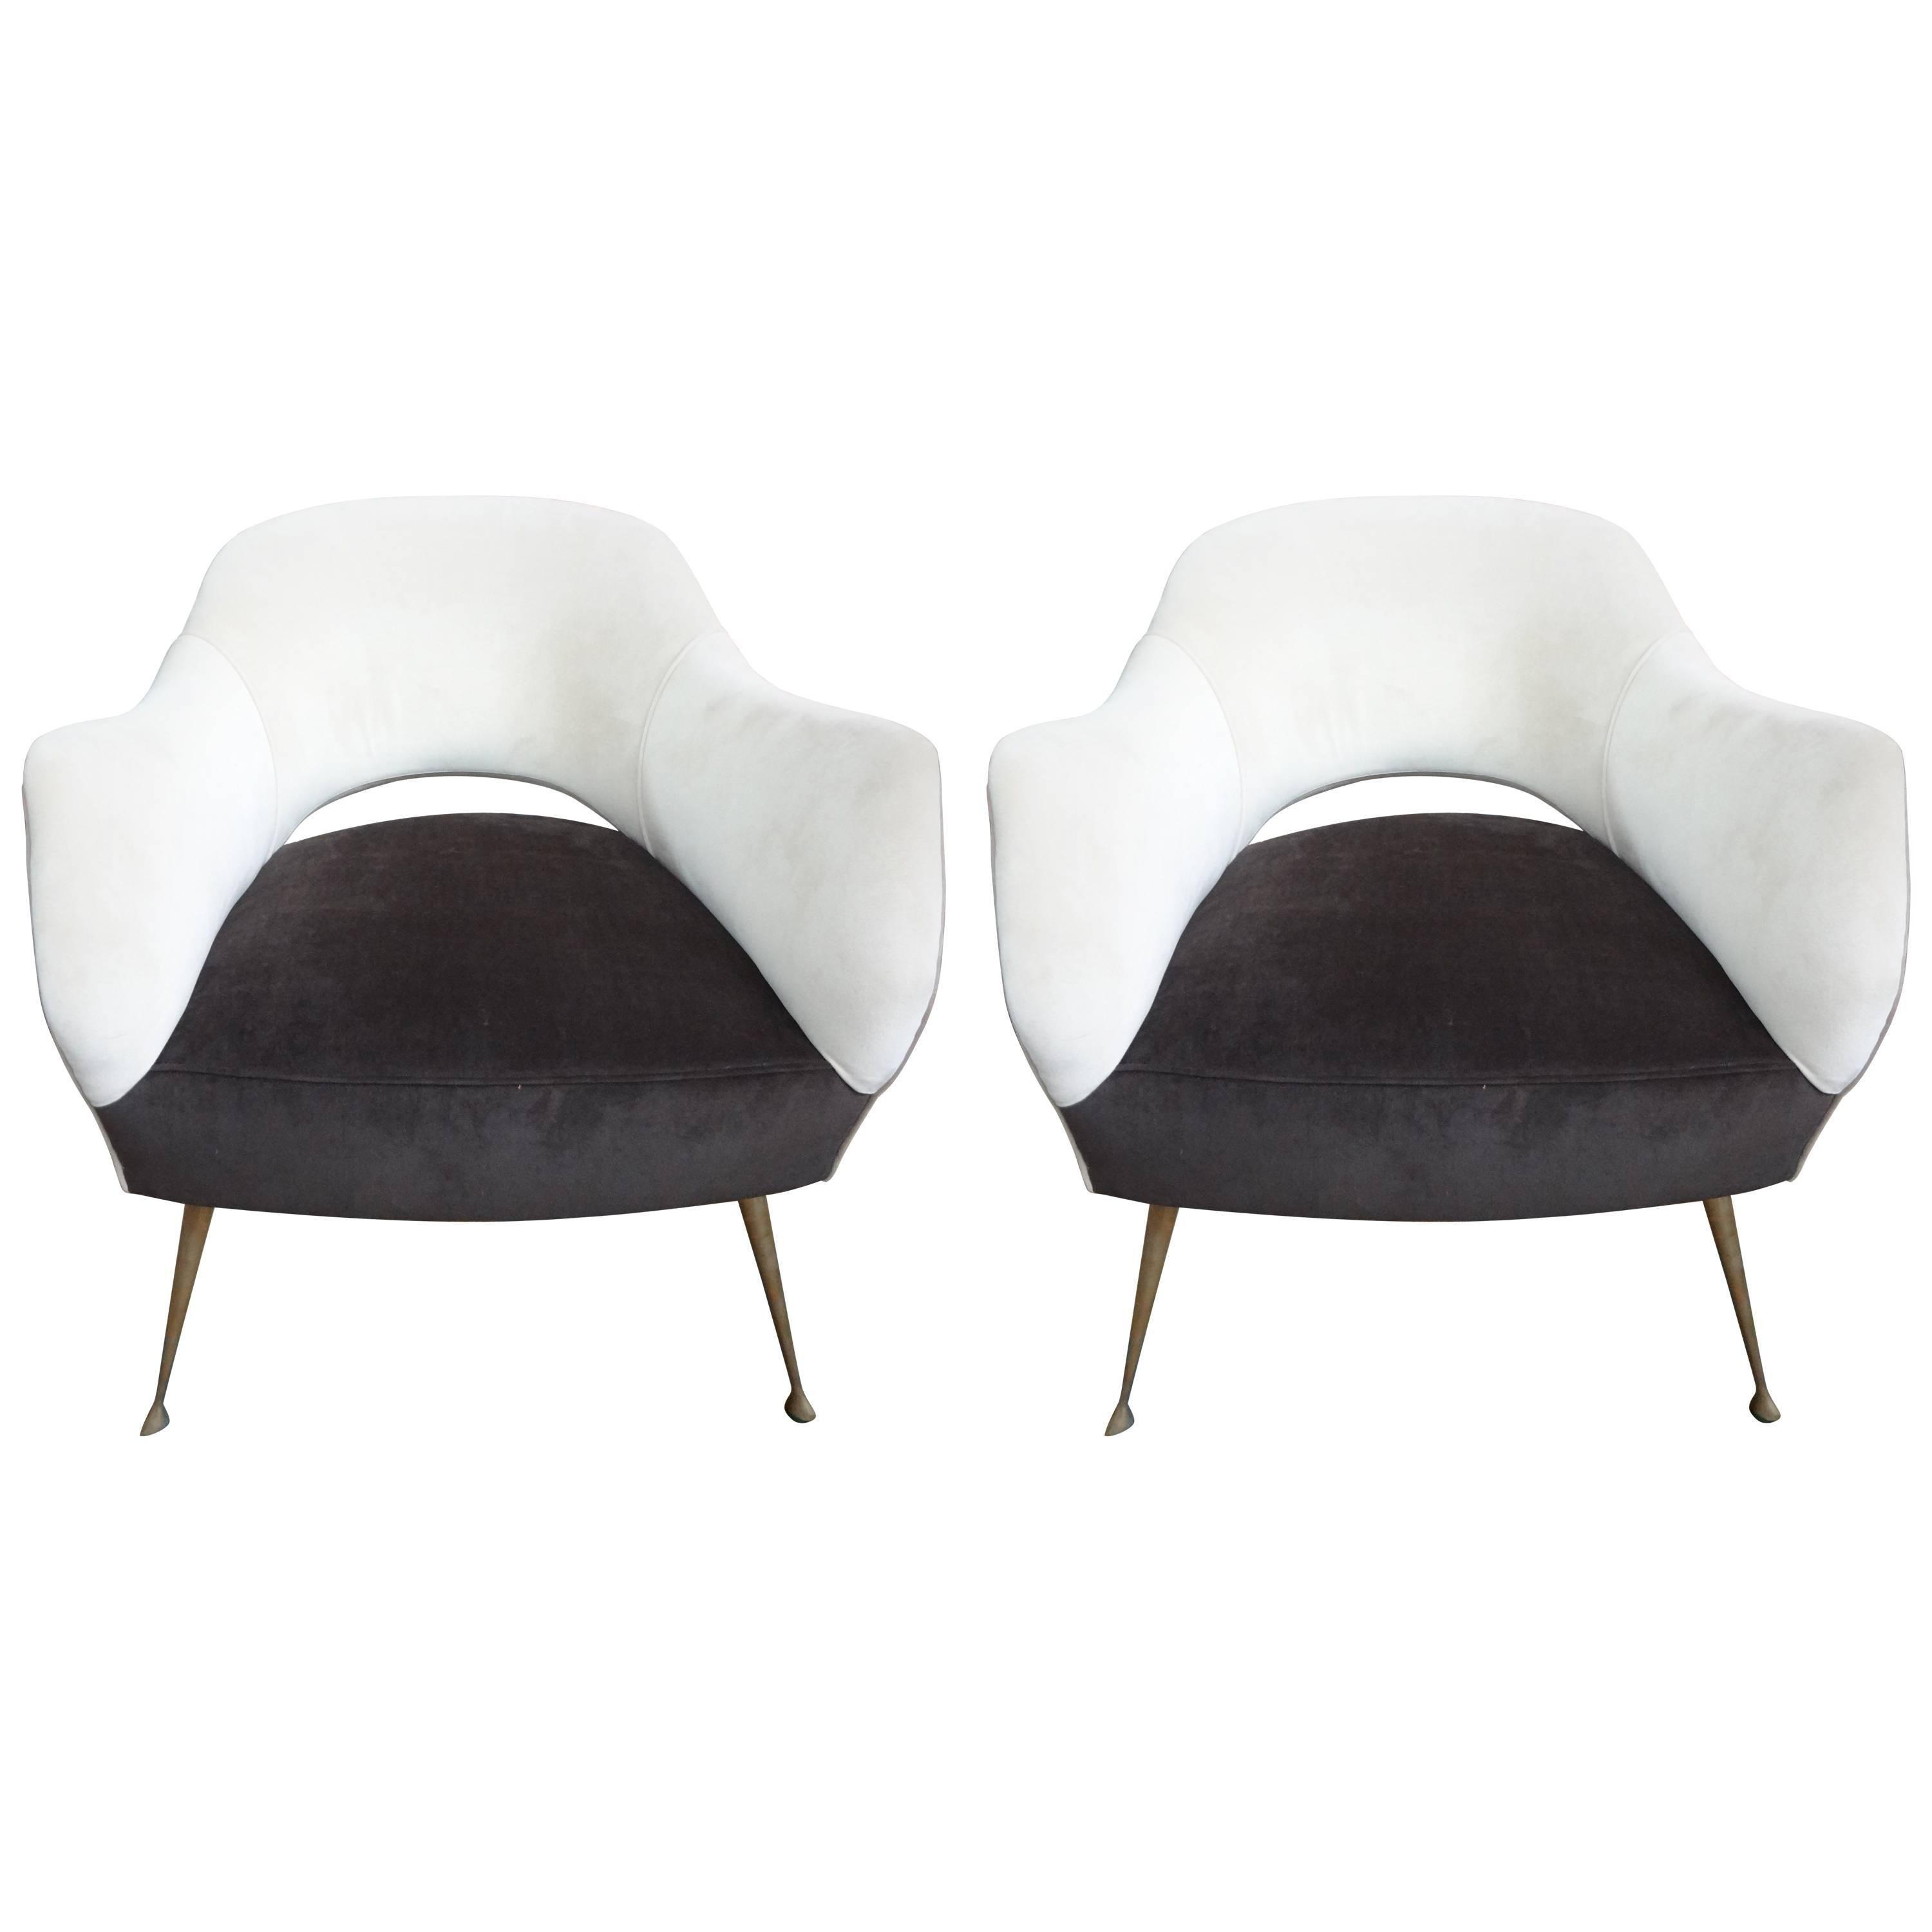 Pair of Italian Modern Lounge Chairs by ISA Bergamo